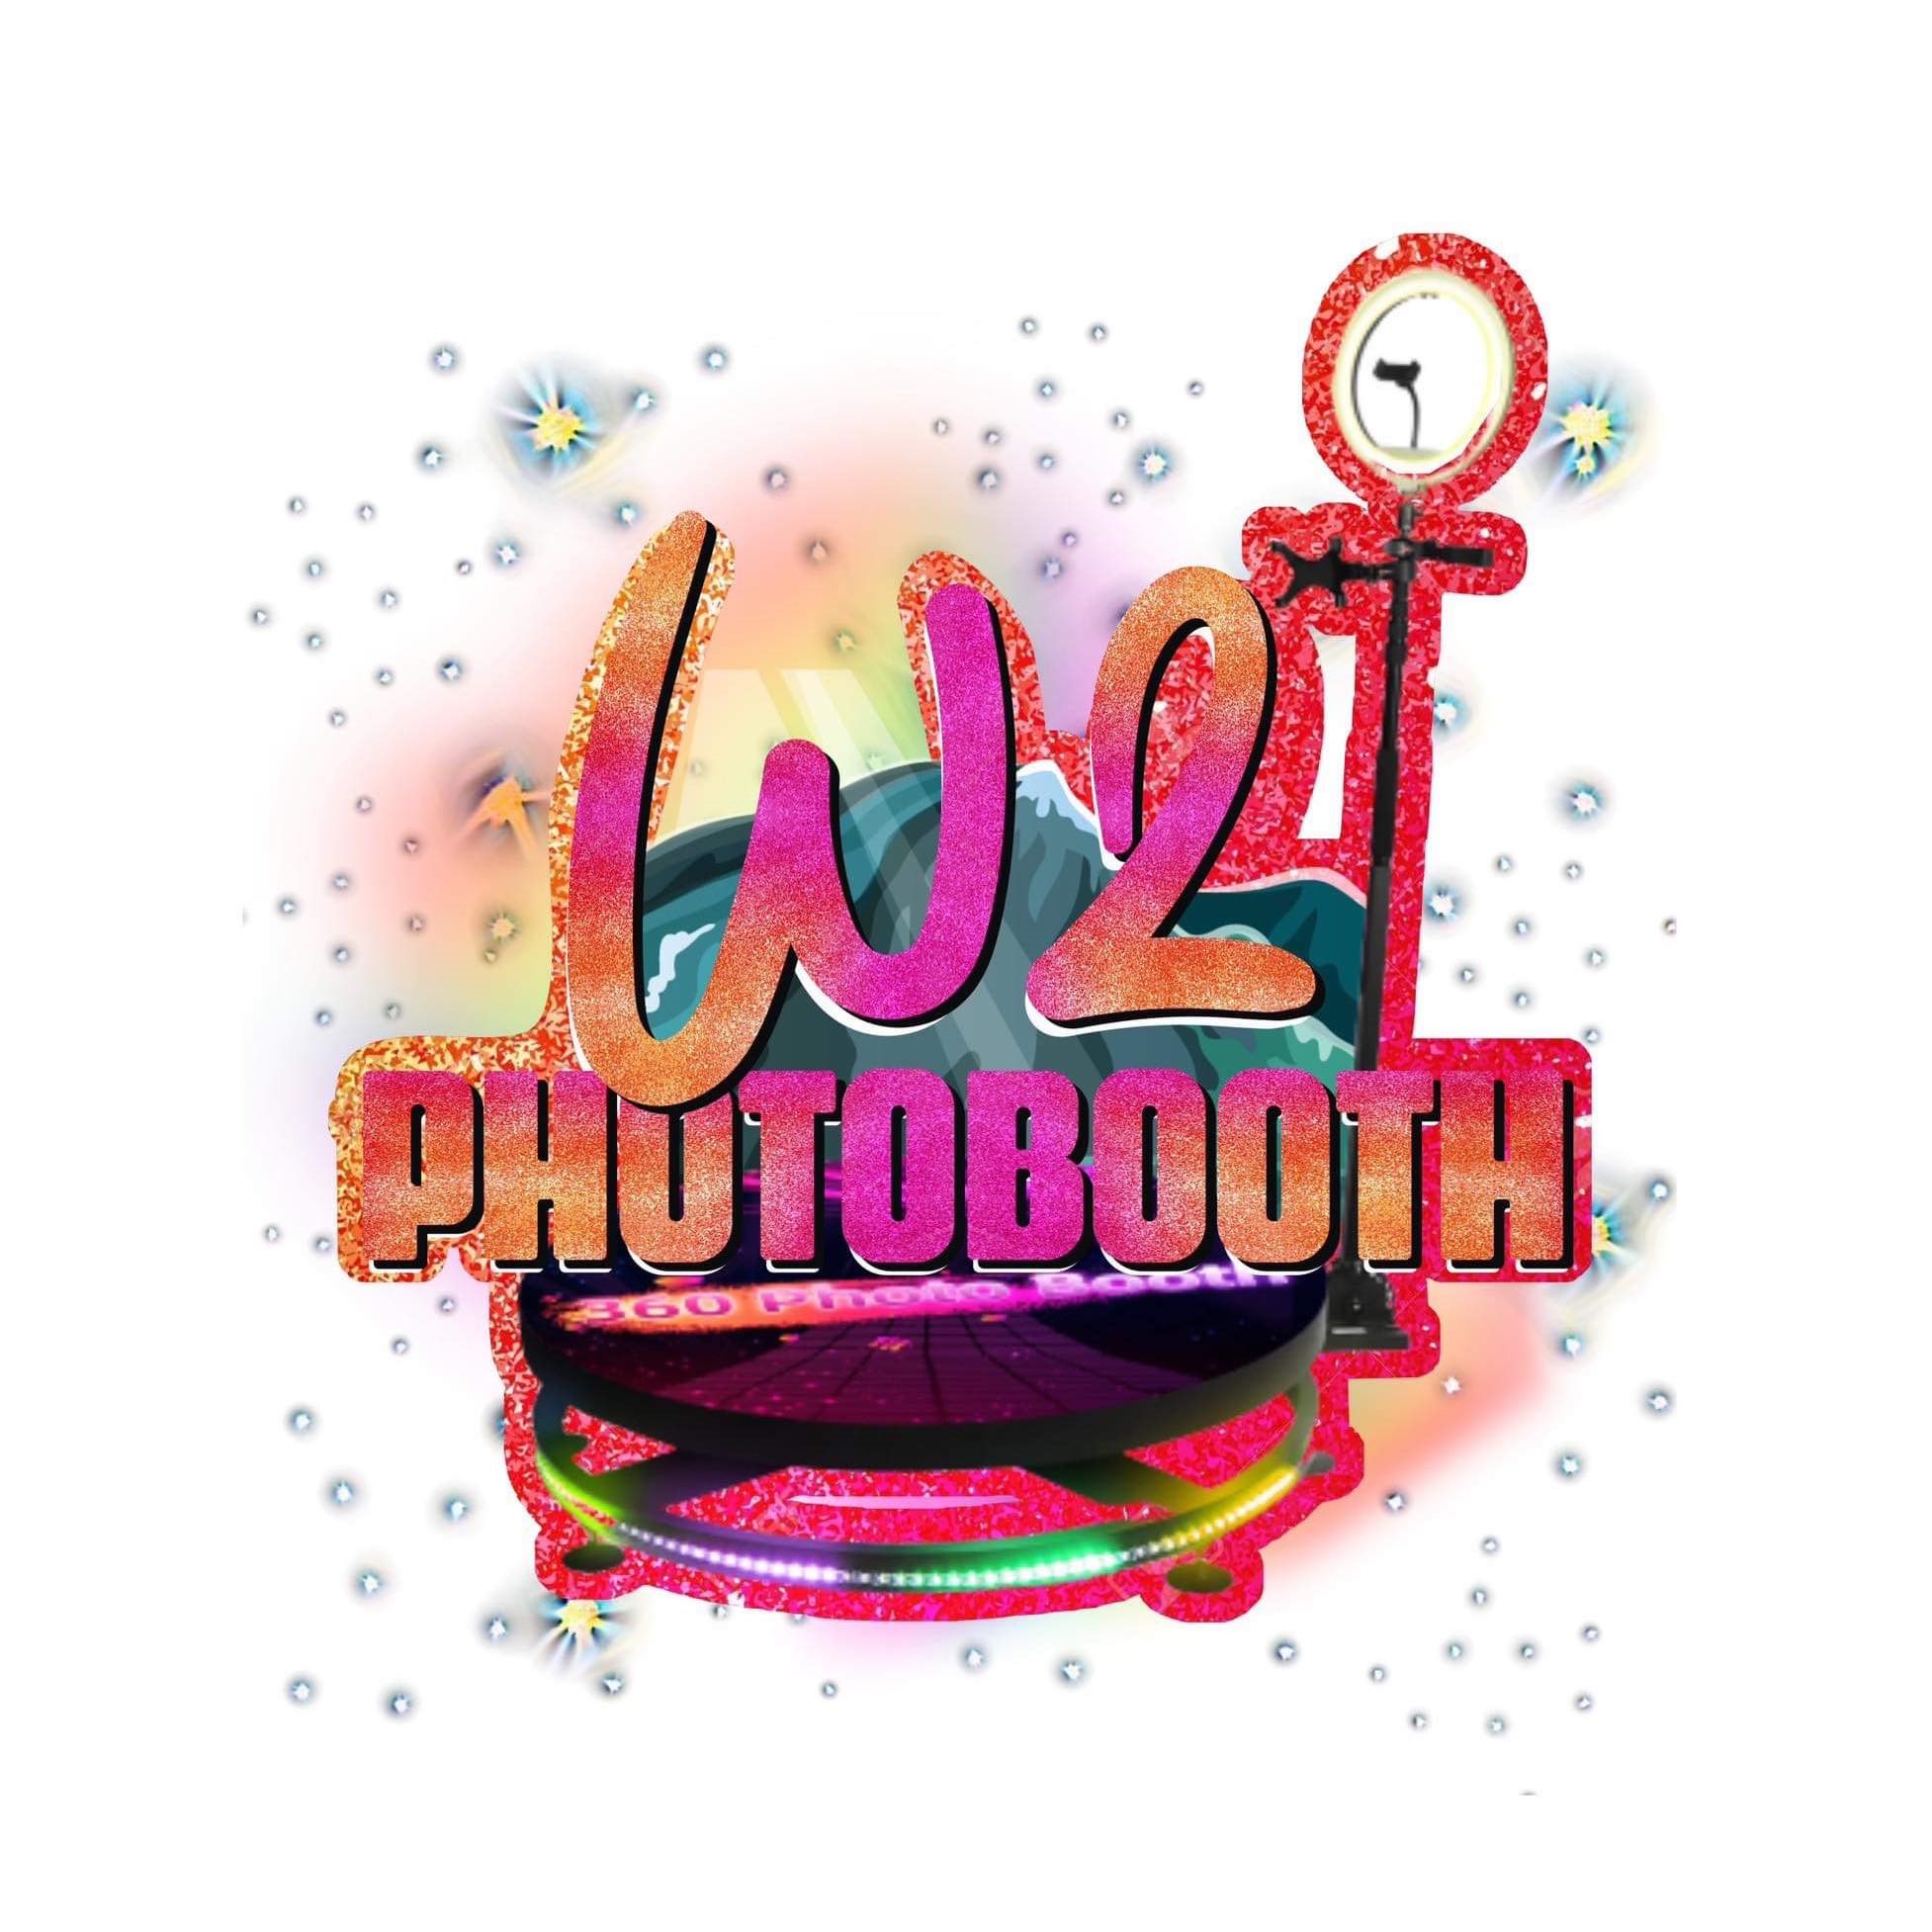 W2 Photobooth